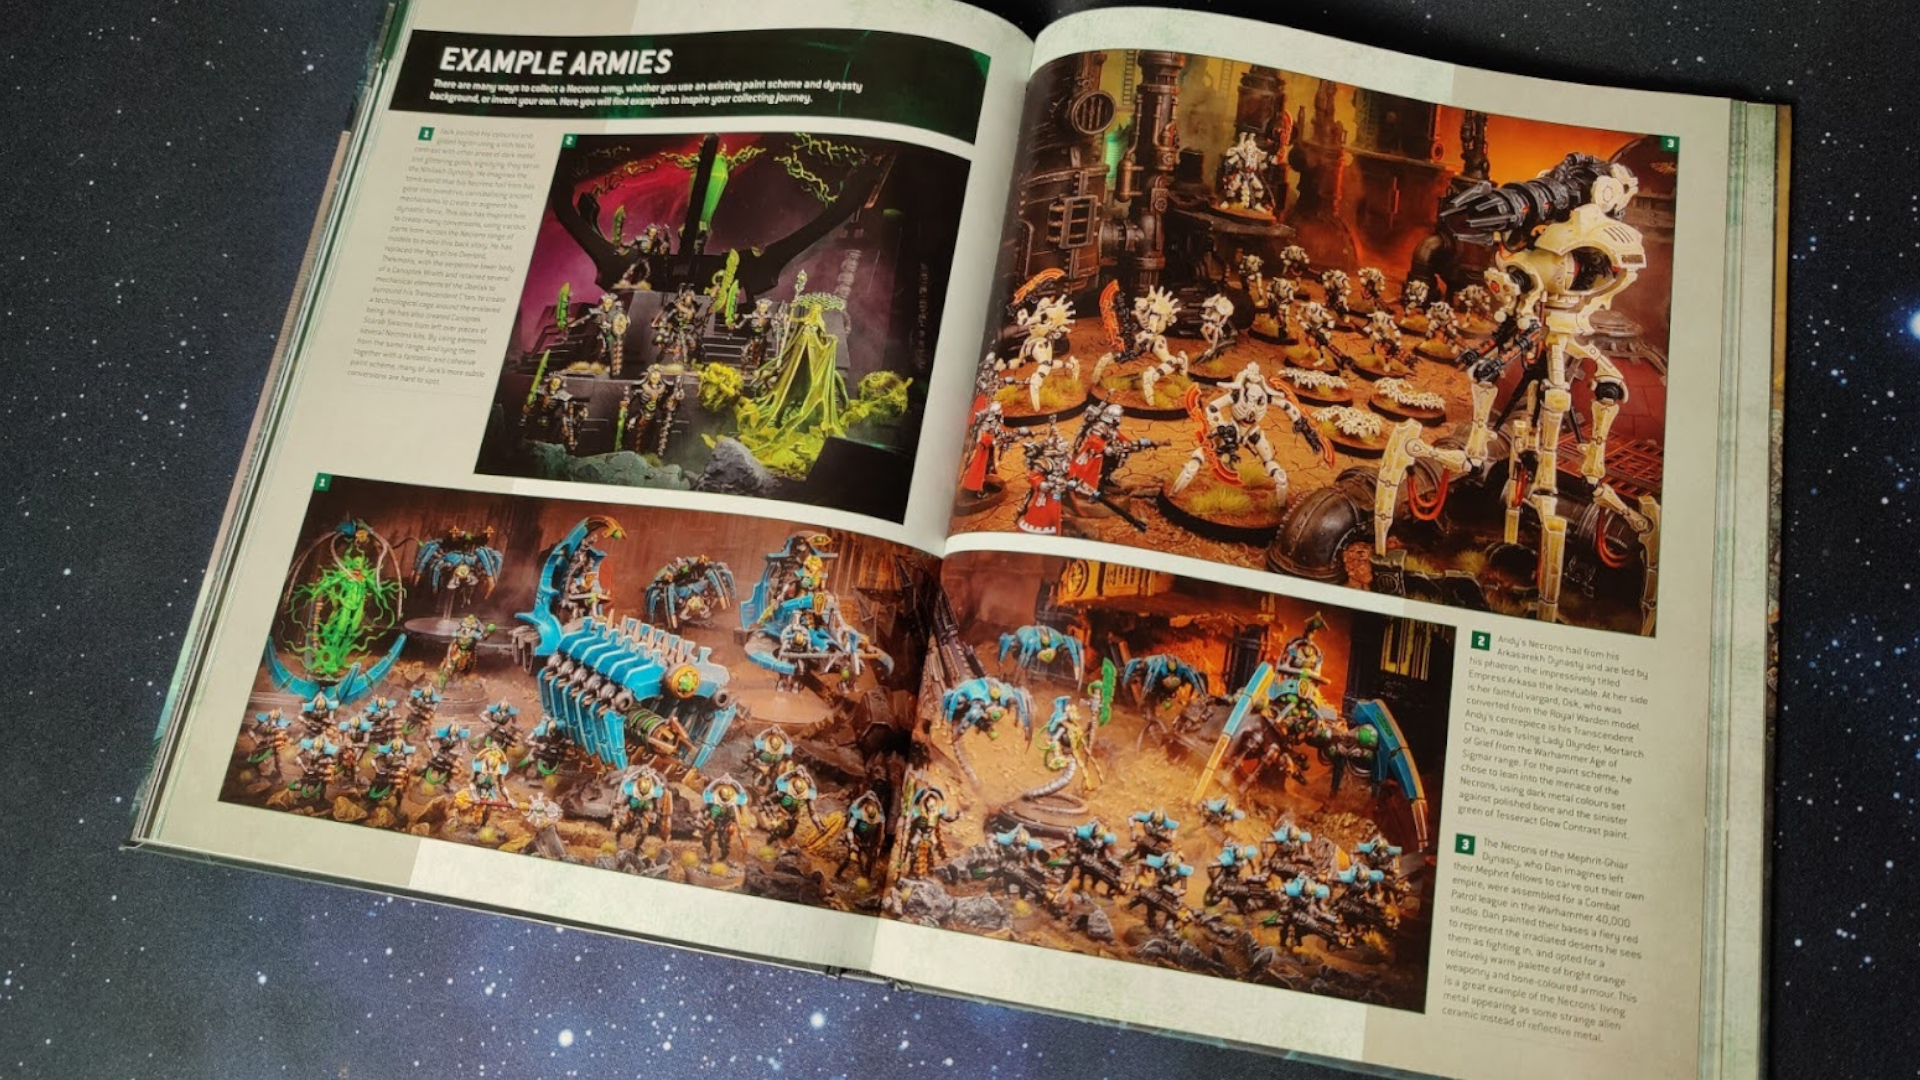 Des exemples d'armées Necron sur deux pages, assis sur un fond étoilé